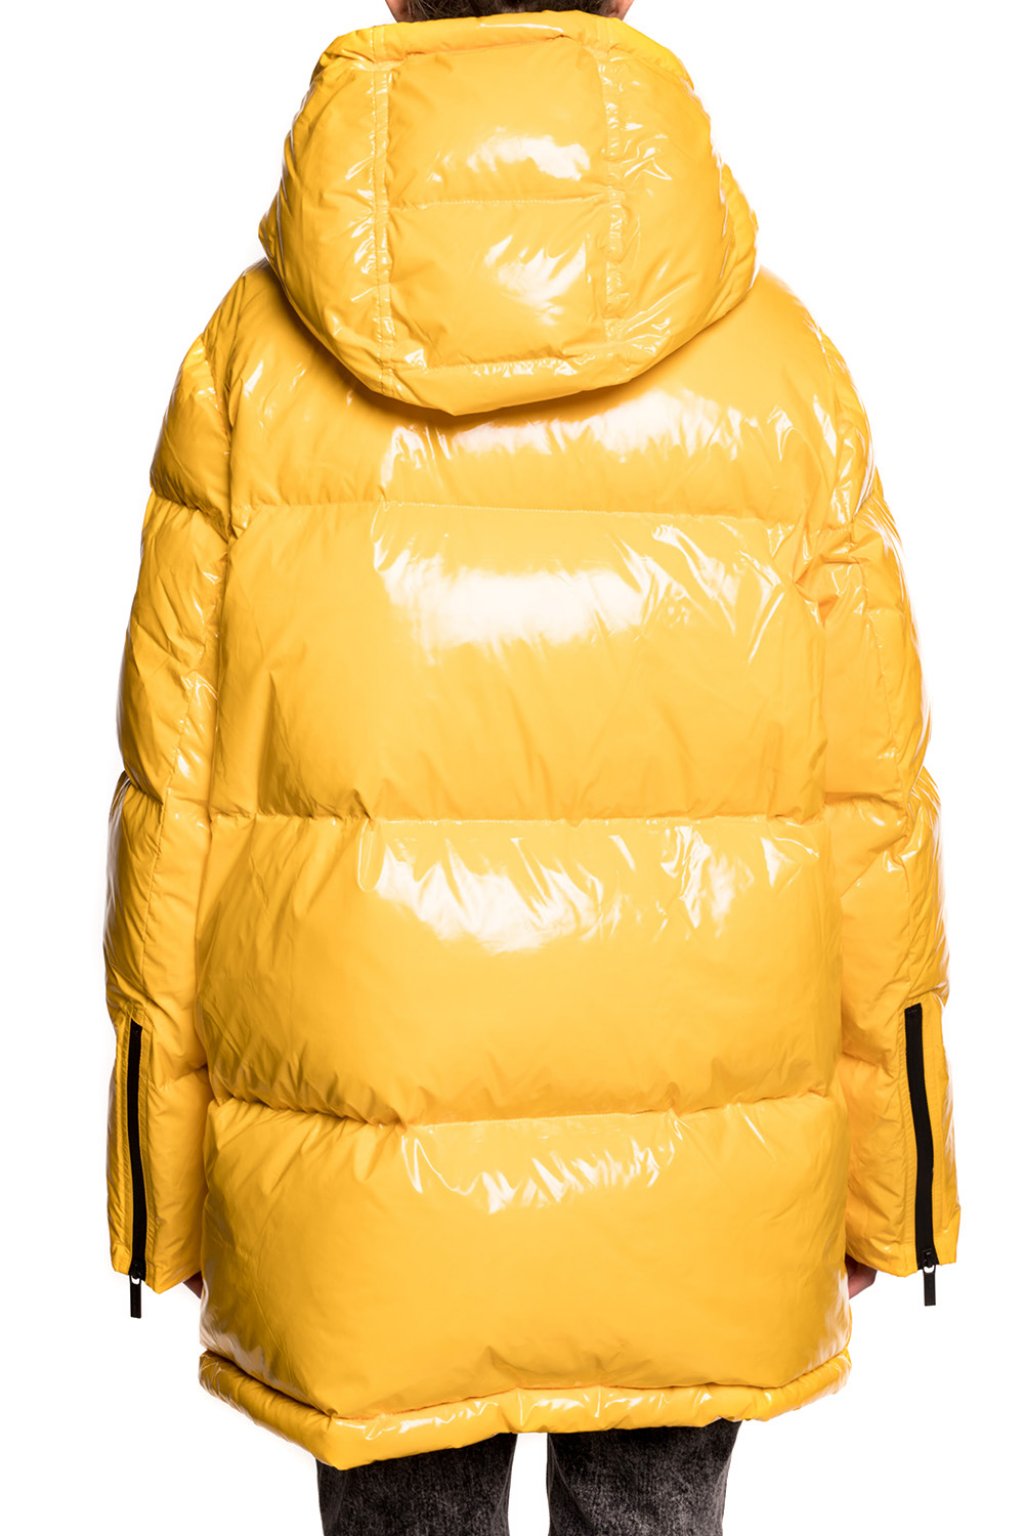 michael kors yellow jacket